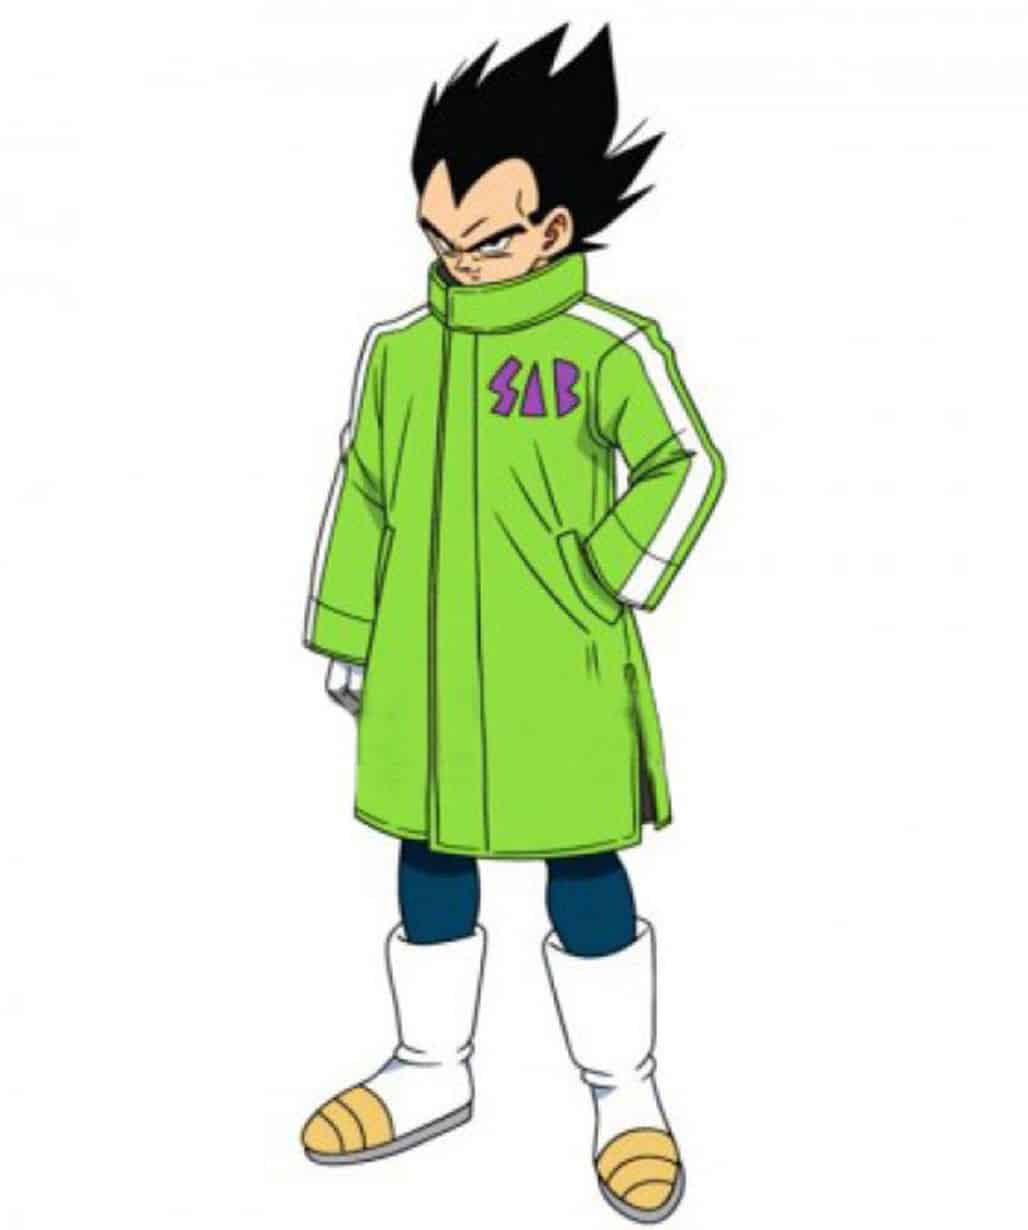 Dragon-Ball-Super-Series-Broly-Vegeta-SAB-Coat